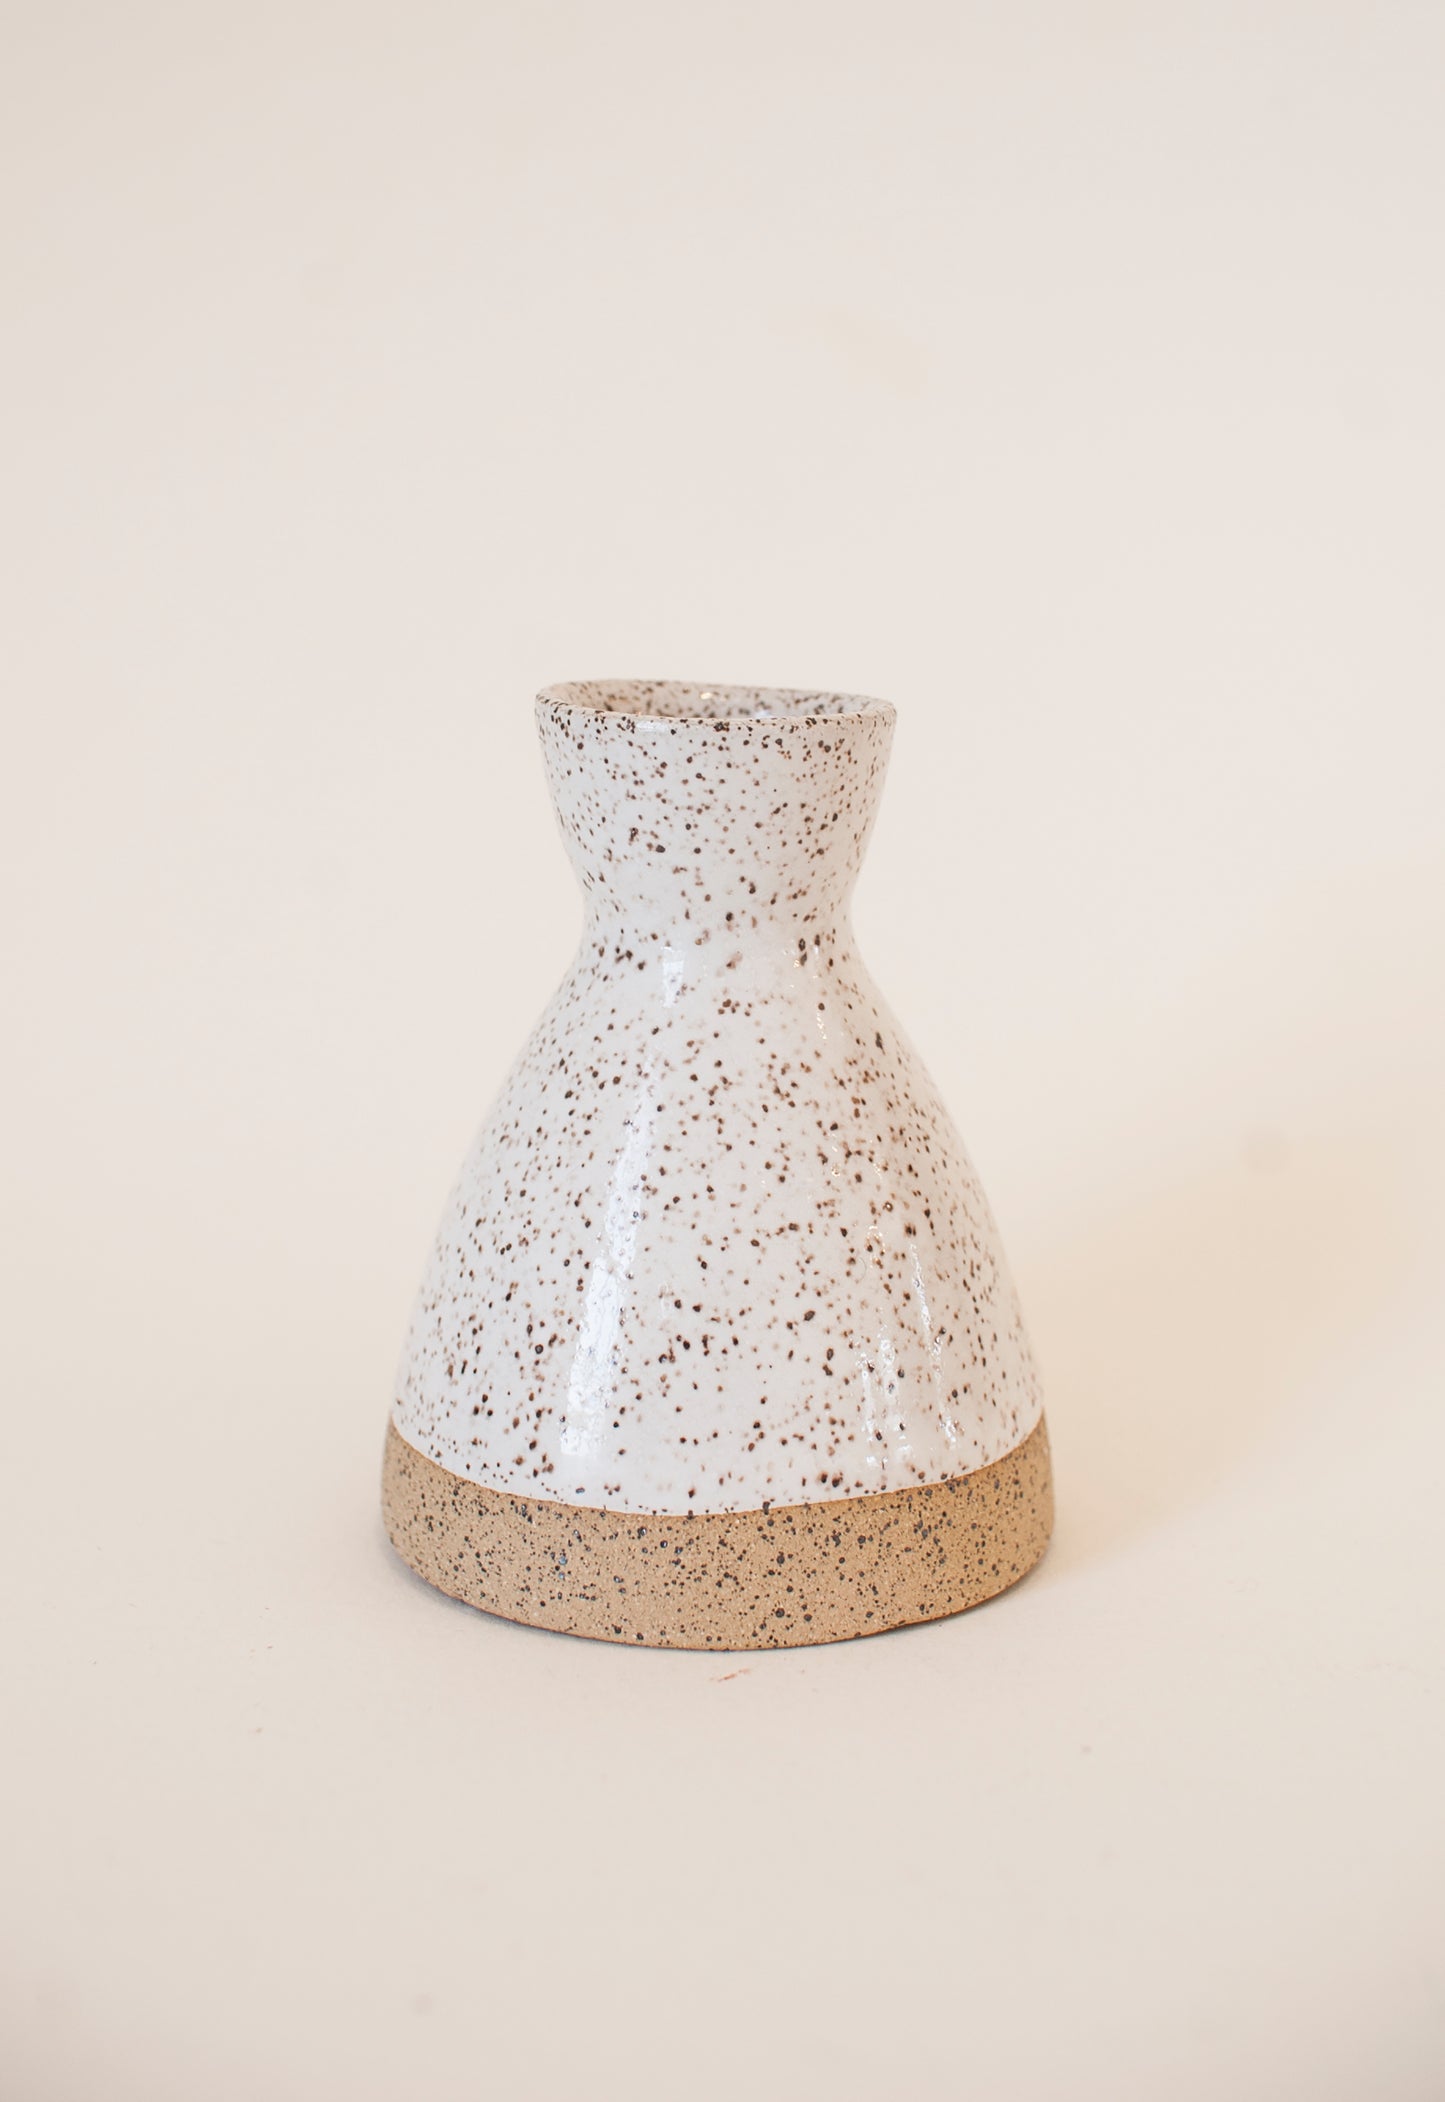 Ceramic Taper Holder in White Glaze/Raw Clay